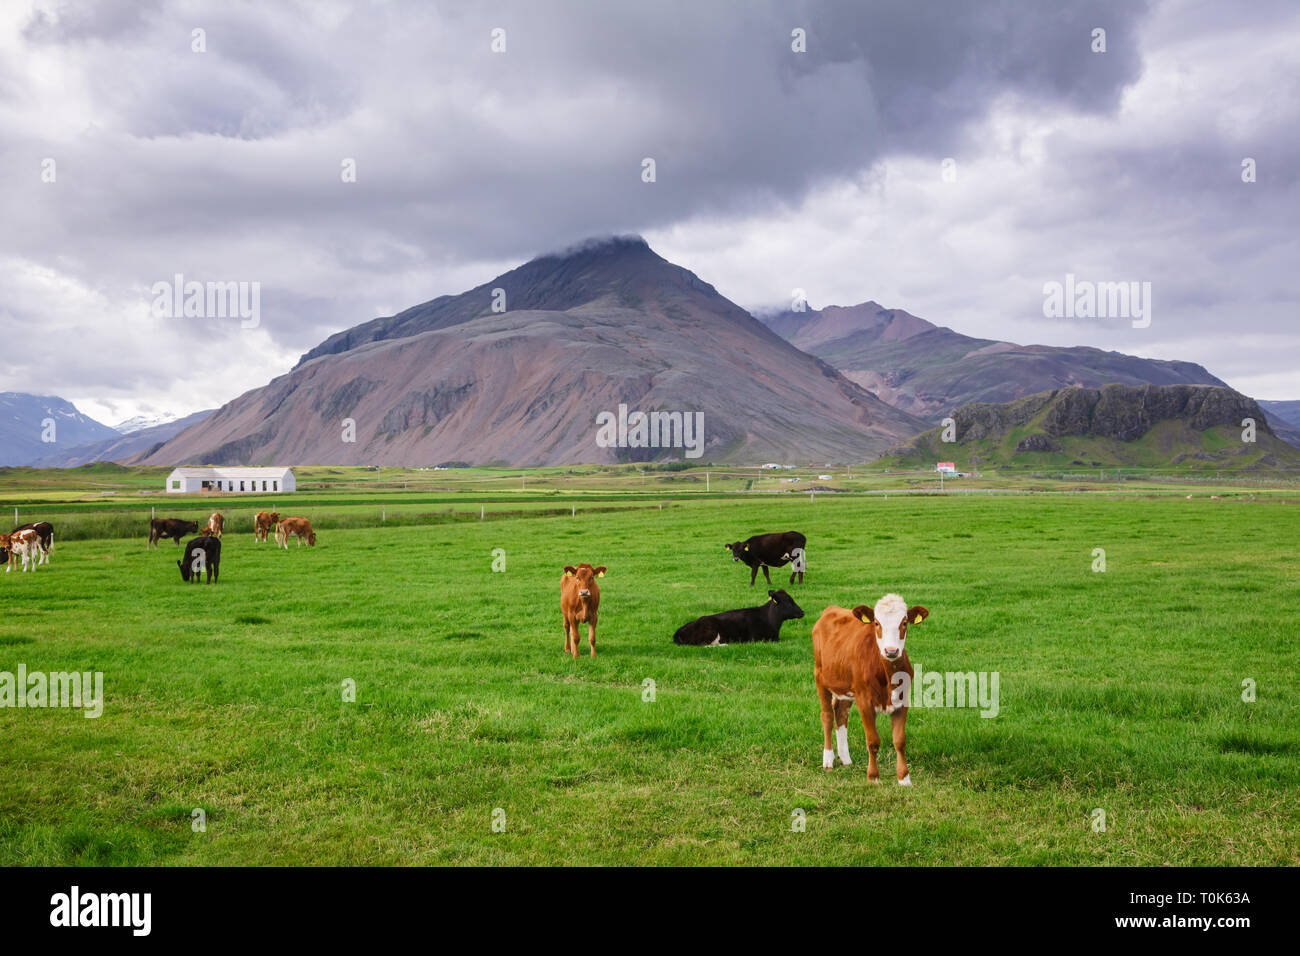 Isländische Landschaft mit freier Bereich Rinder grasen in einer Weide unter düsteren Himmel mit kleinen Bauernhof und vulkanischen Berg im Hintergrund - rauhe agr Stockfoto